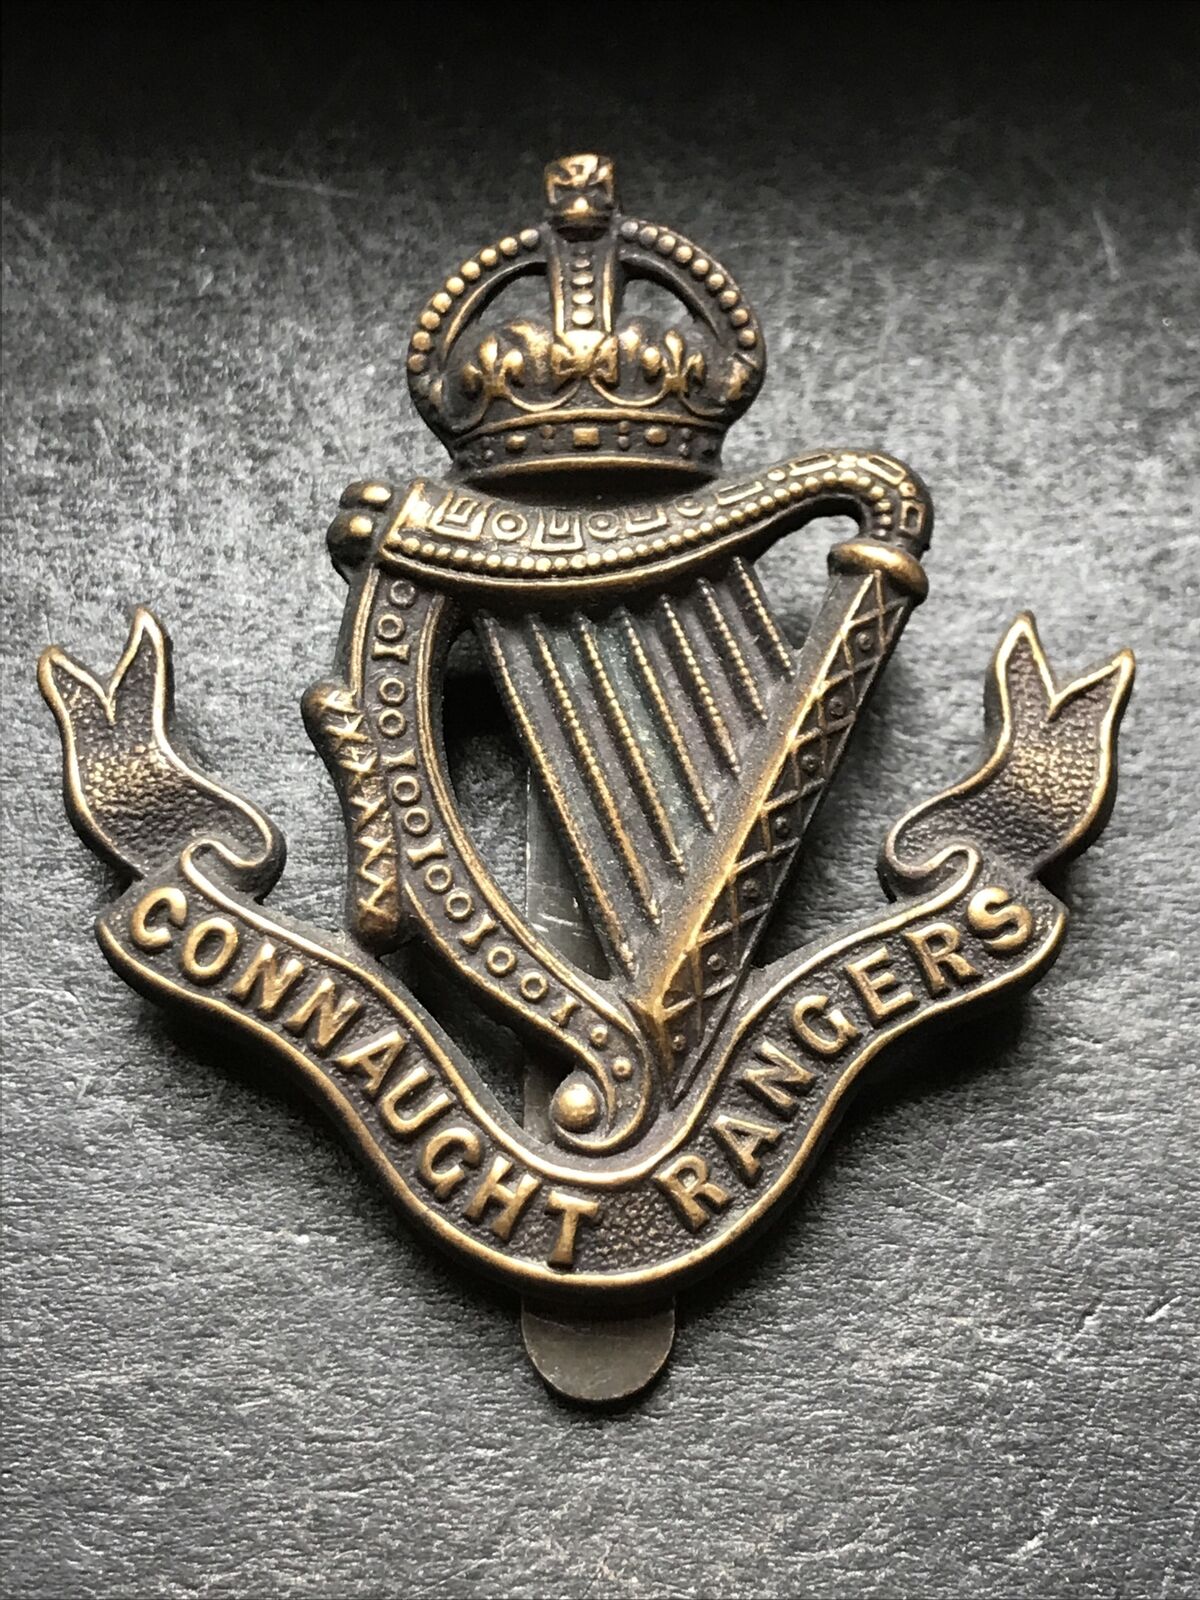 Connaught Rangers Original British Army Cap Badge